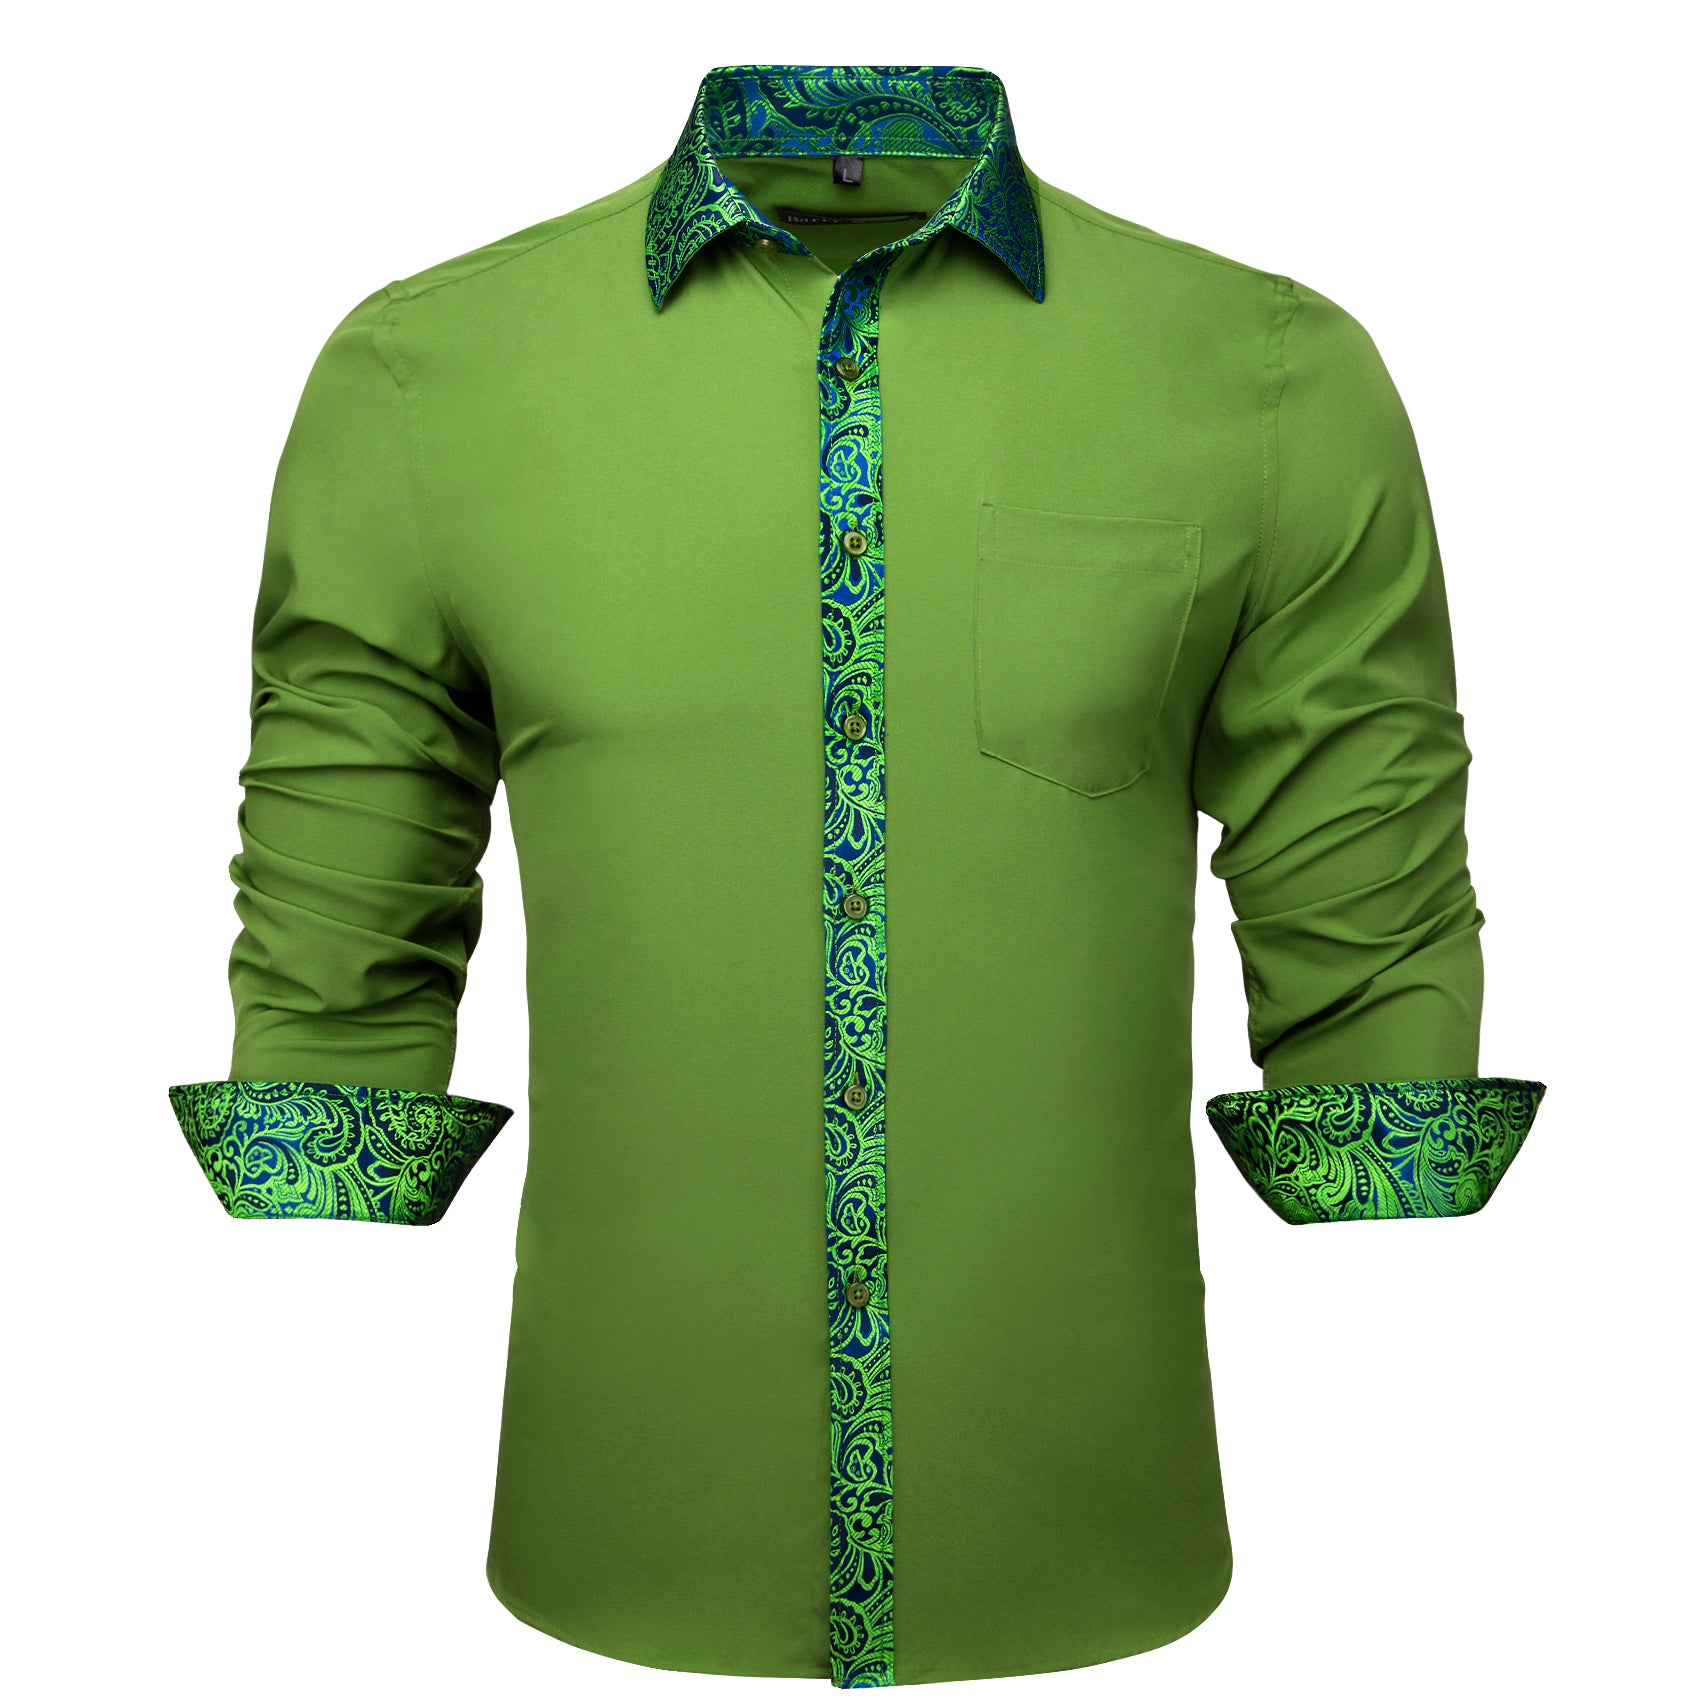 Barry.wang Grass Green Splicing Men's Business Shirt